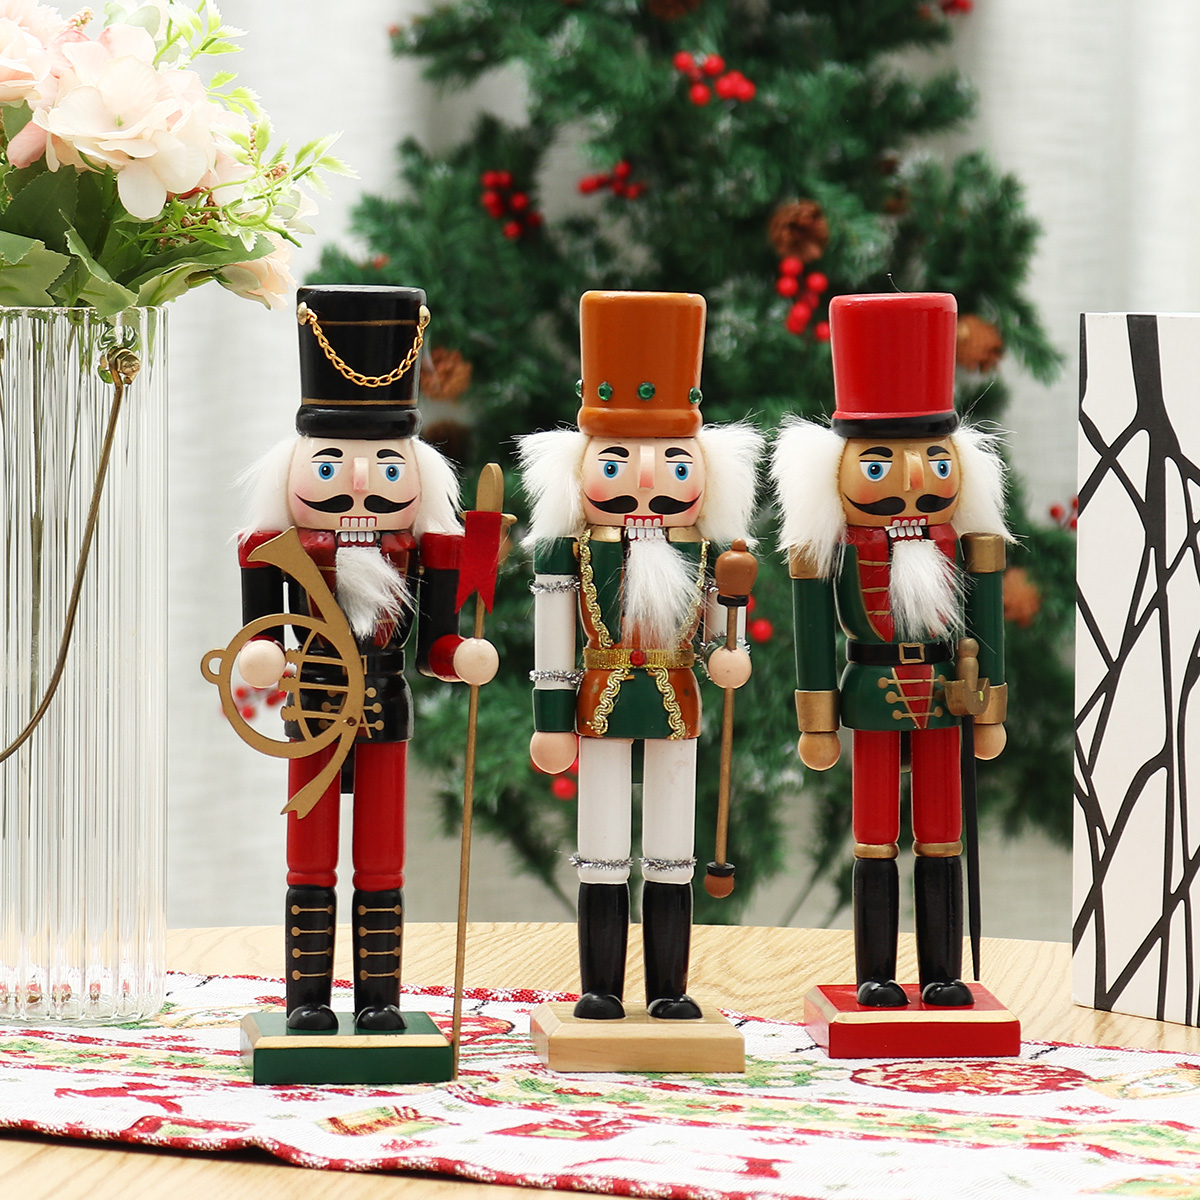 Christmas-Nutcracker-Soldier-Doll--Wooden-Puppet-Vintage-Desktop-Ornaments-25cm-Festival-Decoration-1767883-3